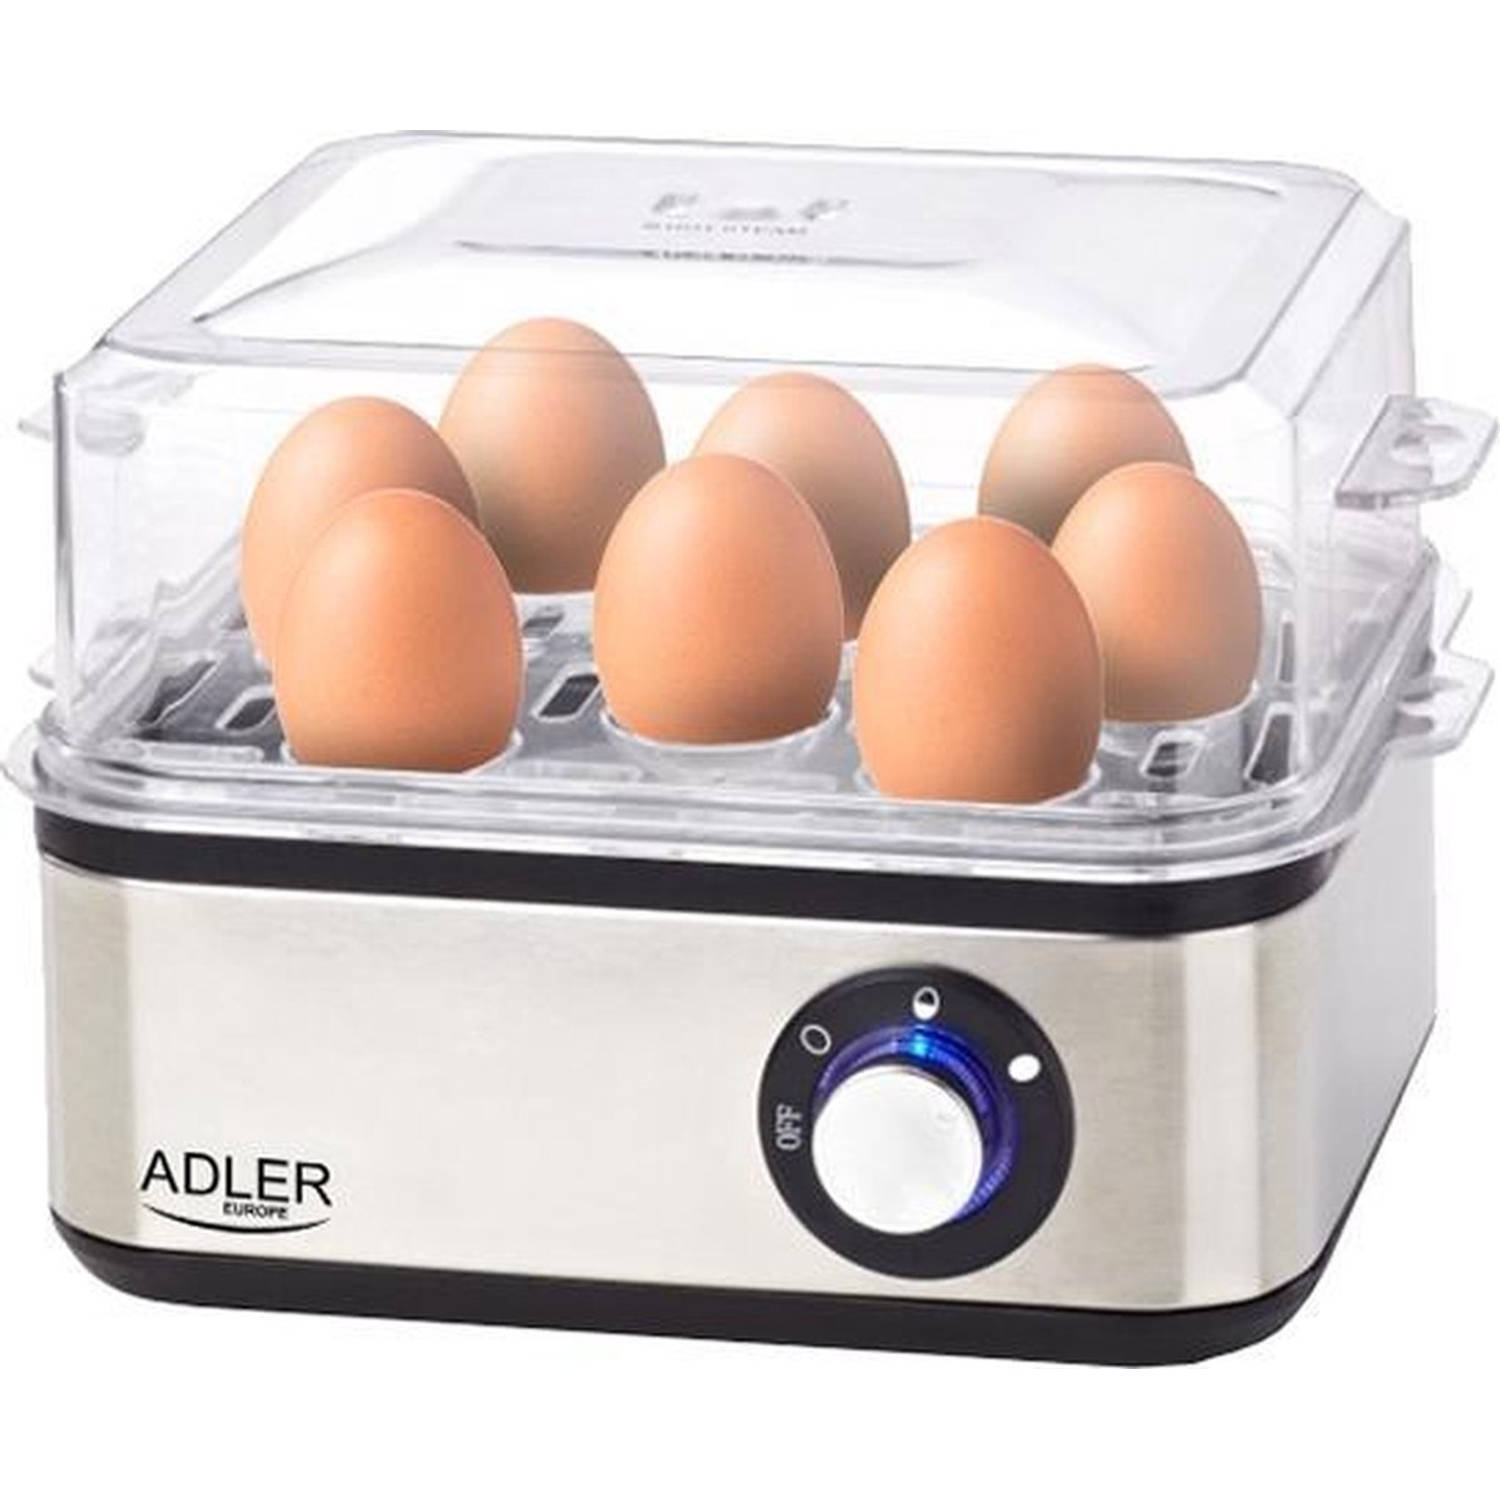 Adler Eierkoker 1- 8 eieren - 500-800 watt